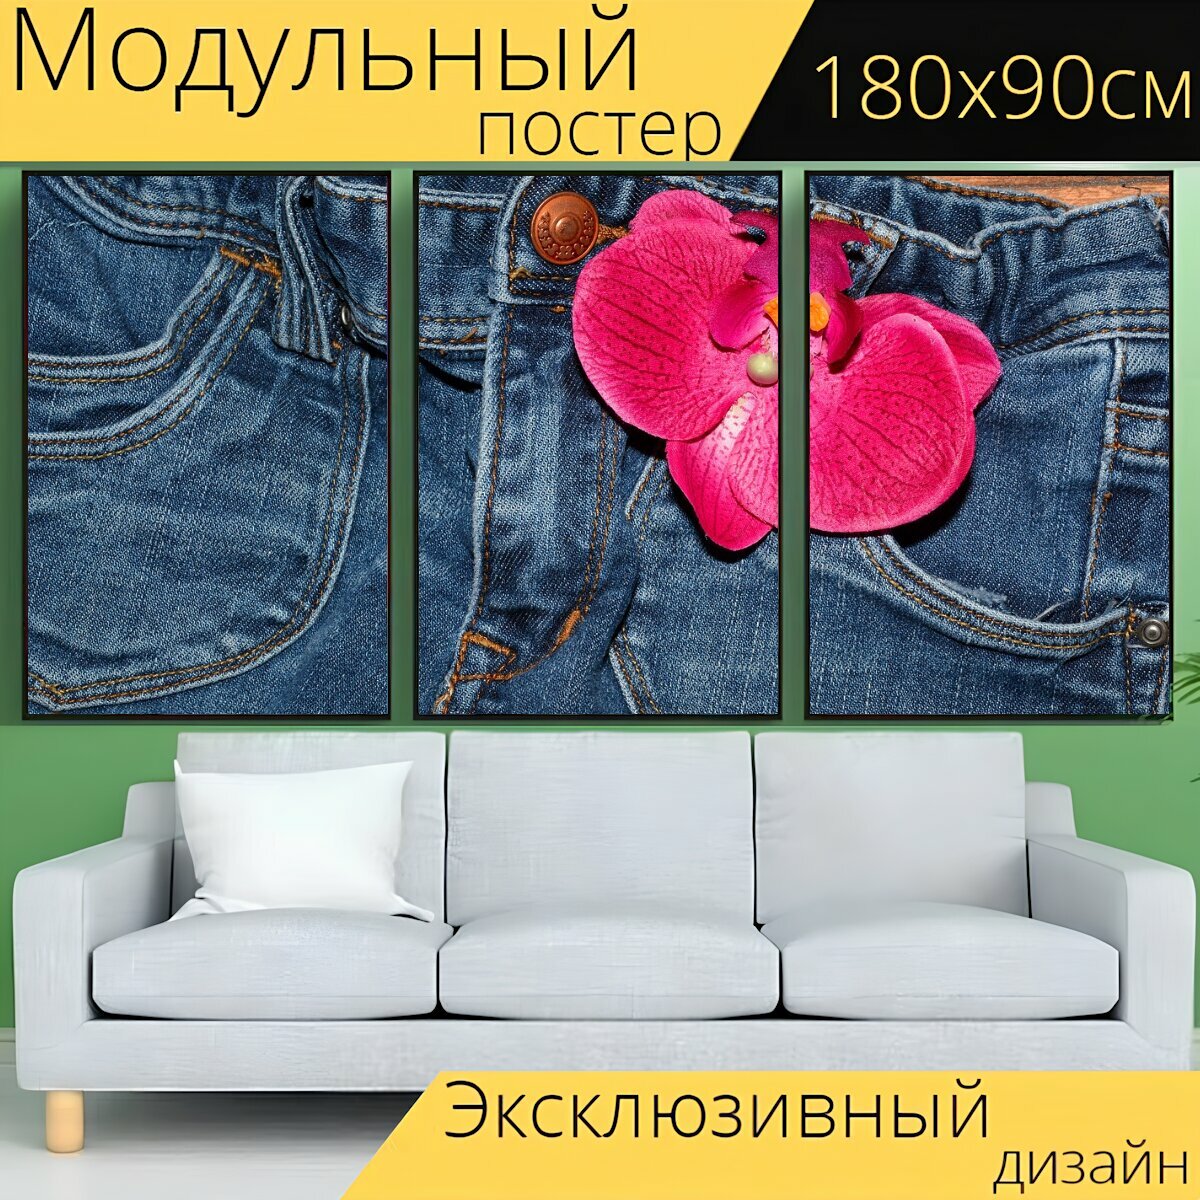 Модульный постер "Джинсы, штаны, одежда" 180 x 90 см. для интерьера